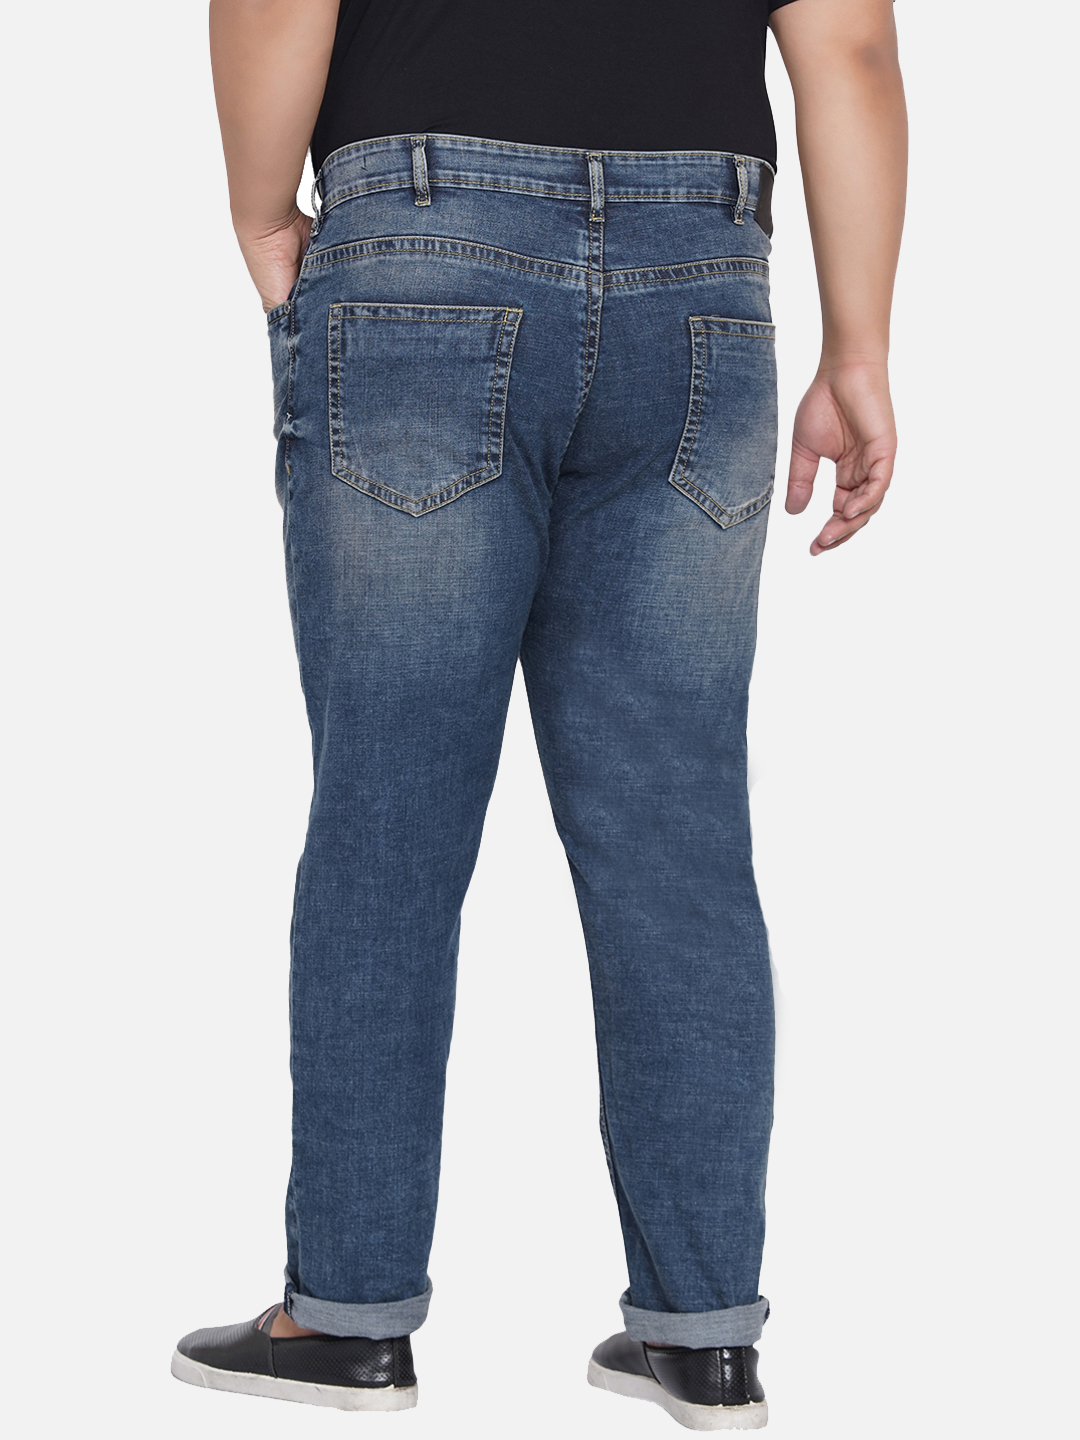 bottomwear/jeans/PJPJ6046/pjpj6046-5.jpg